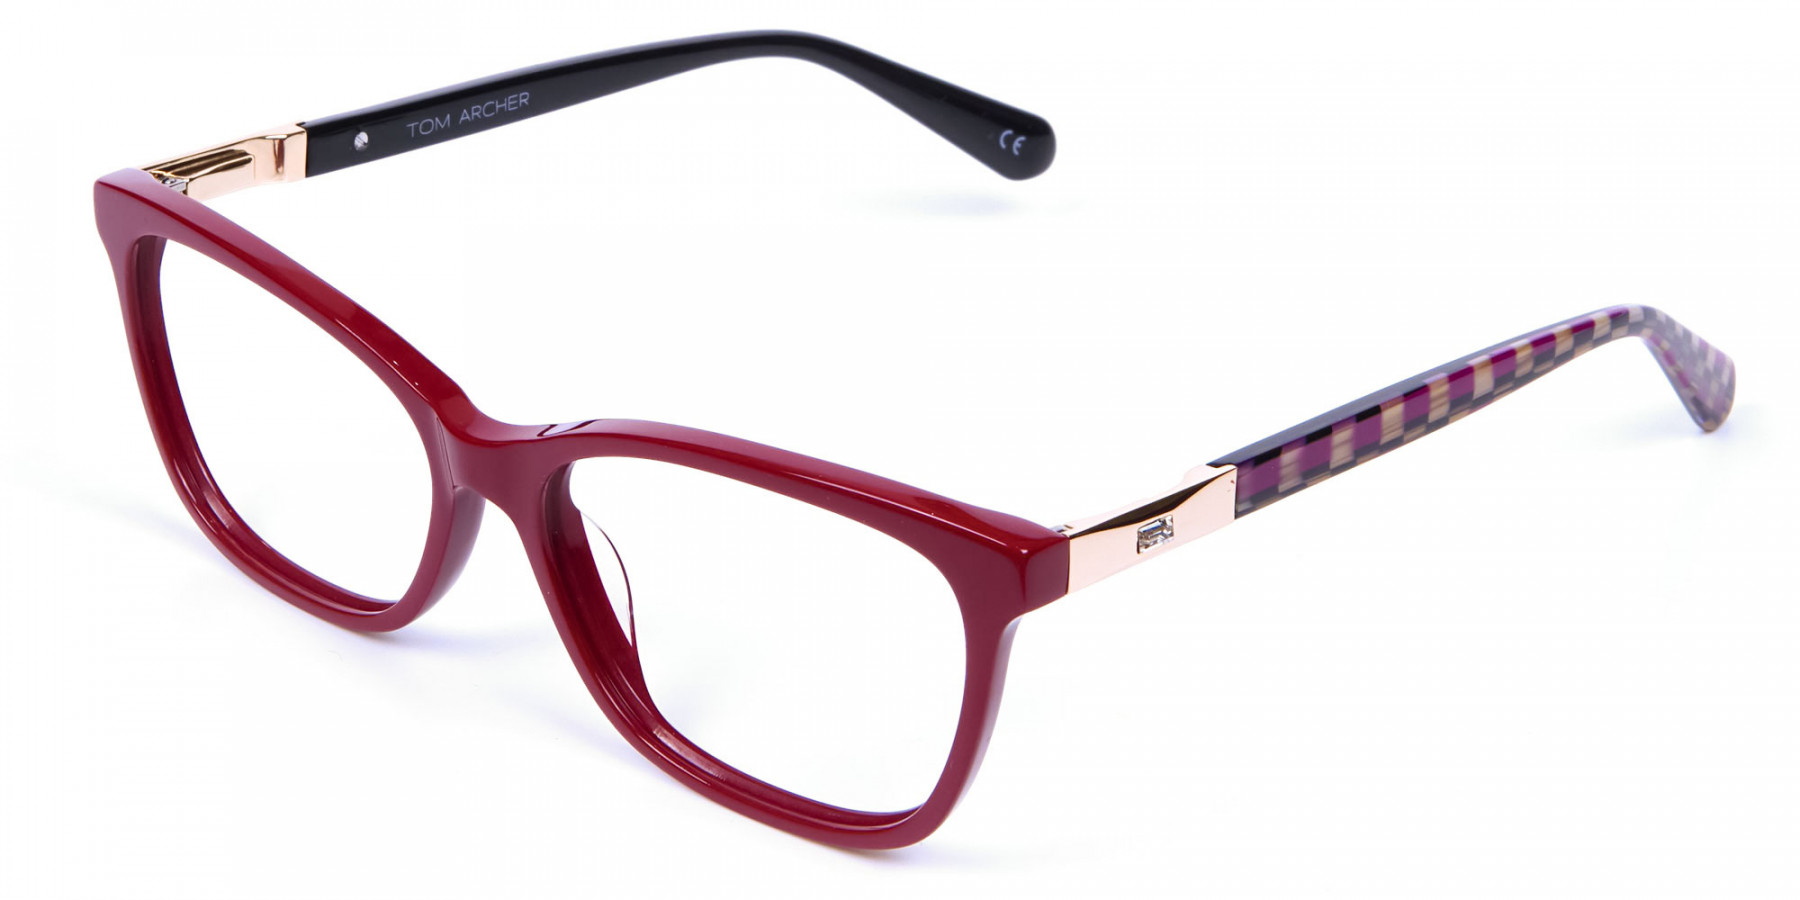 ELISA S3 - Classic Retro Red Cat Eye Glasses Frame Women